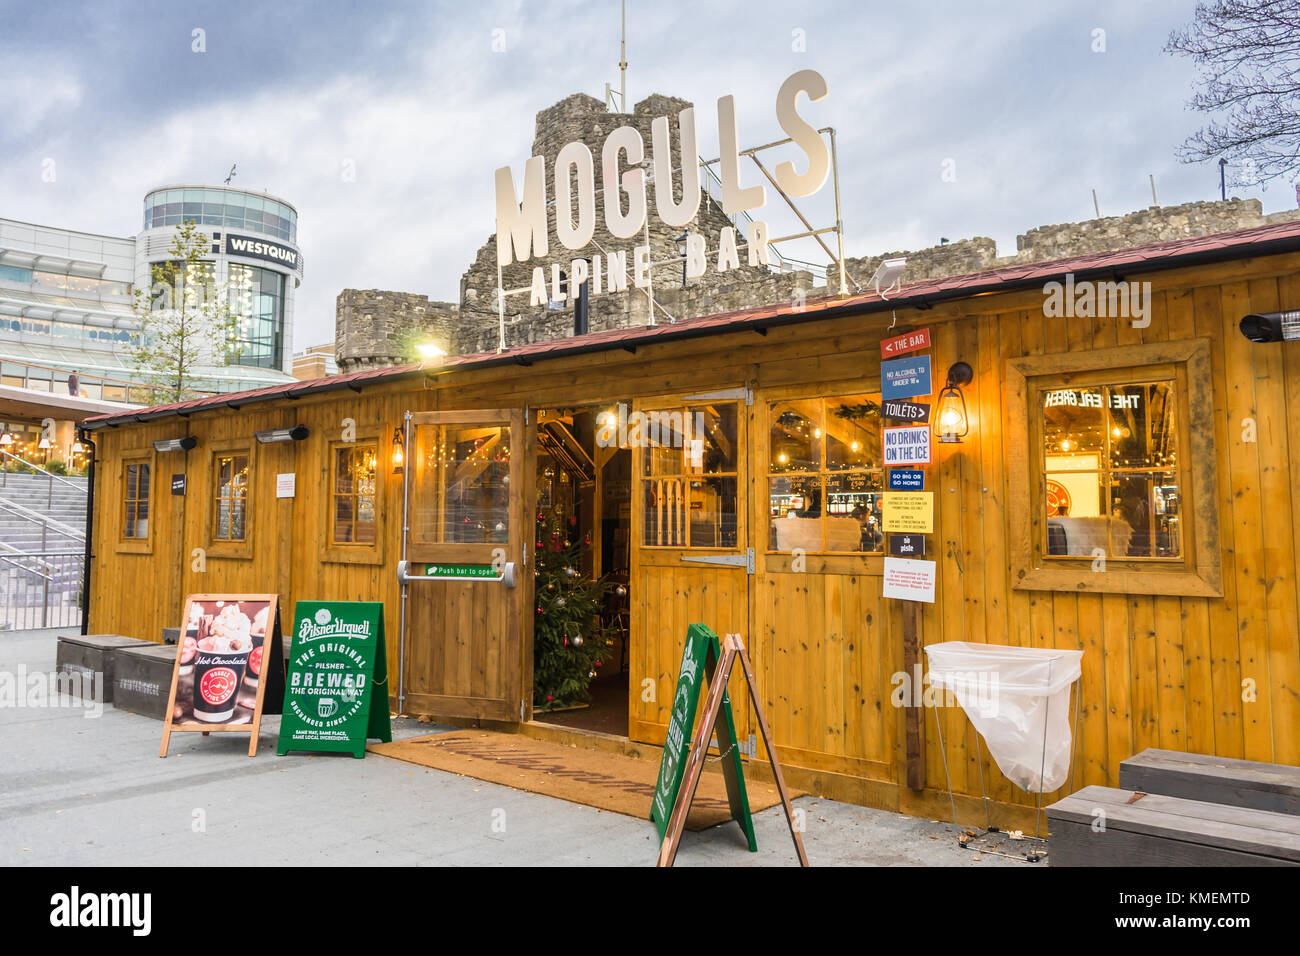 Moguls Bar de style alpin temporairement érigé au centre-ville de Southampton dans le cadre des festivités de Noël de 2017, Southampton, Angleterre, Royaume-Uni Banque D'Images